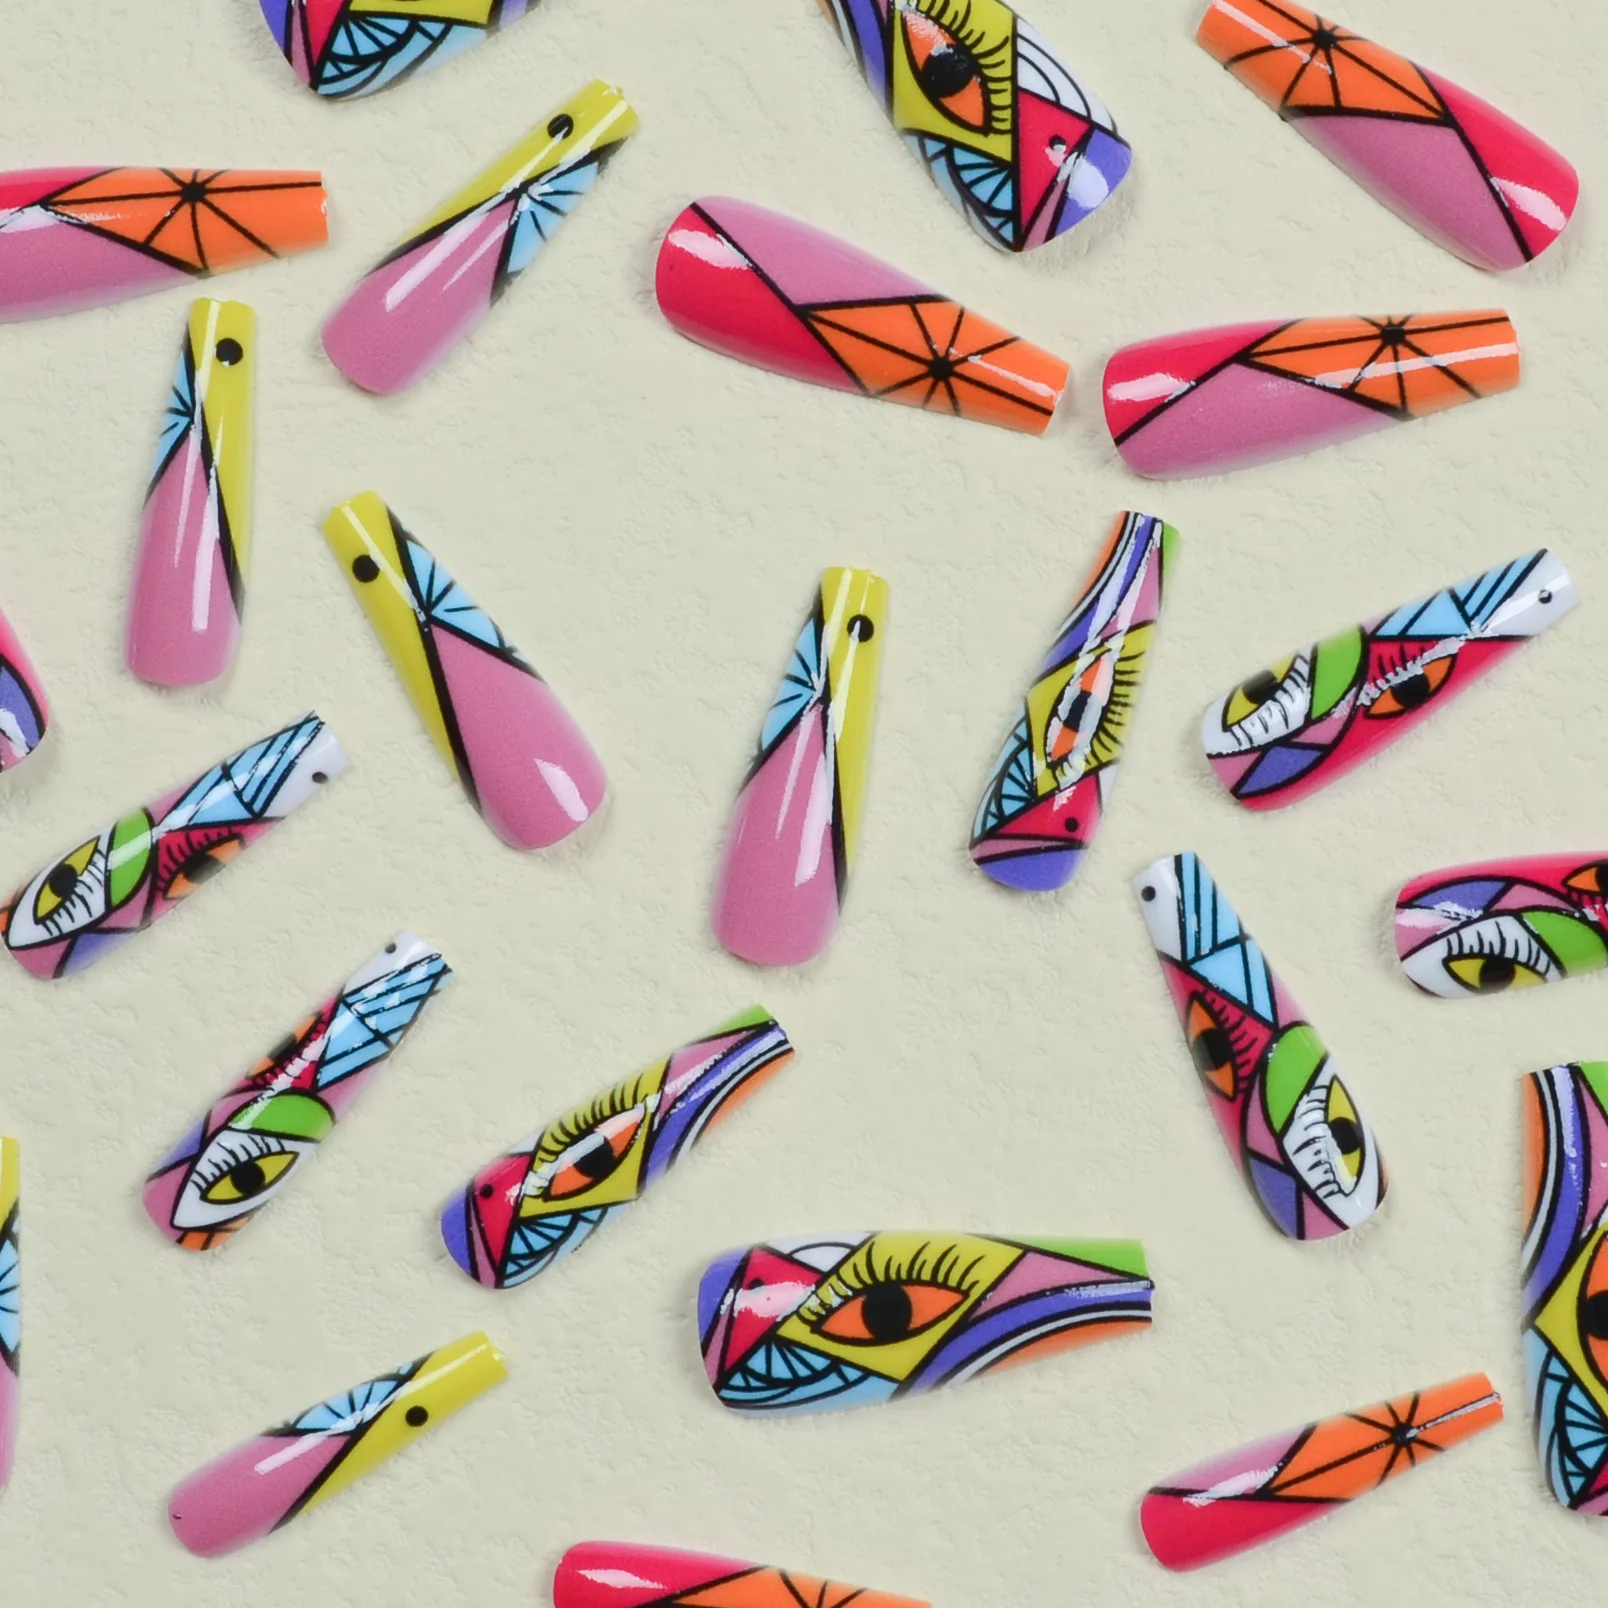 3D unhas postiças acessórios coloridos geometic olho Graffiti longa francês caixão dicas falso ongles prima em acrílico unhas falsas conjunto